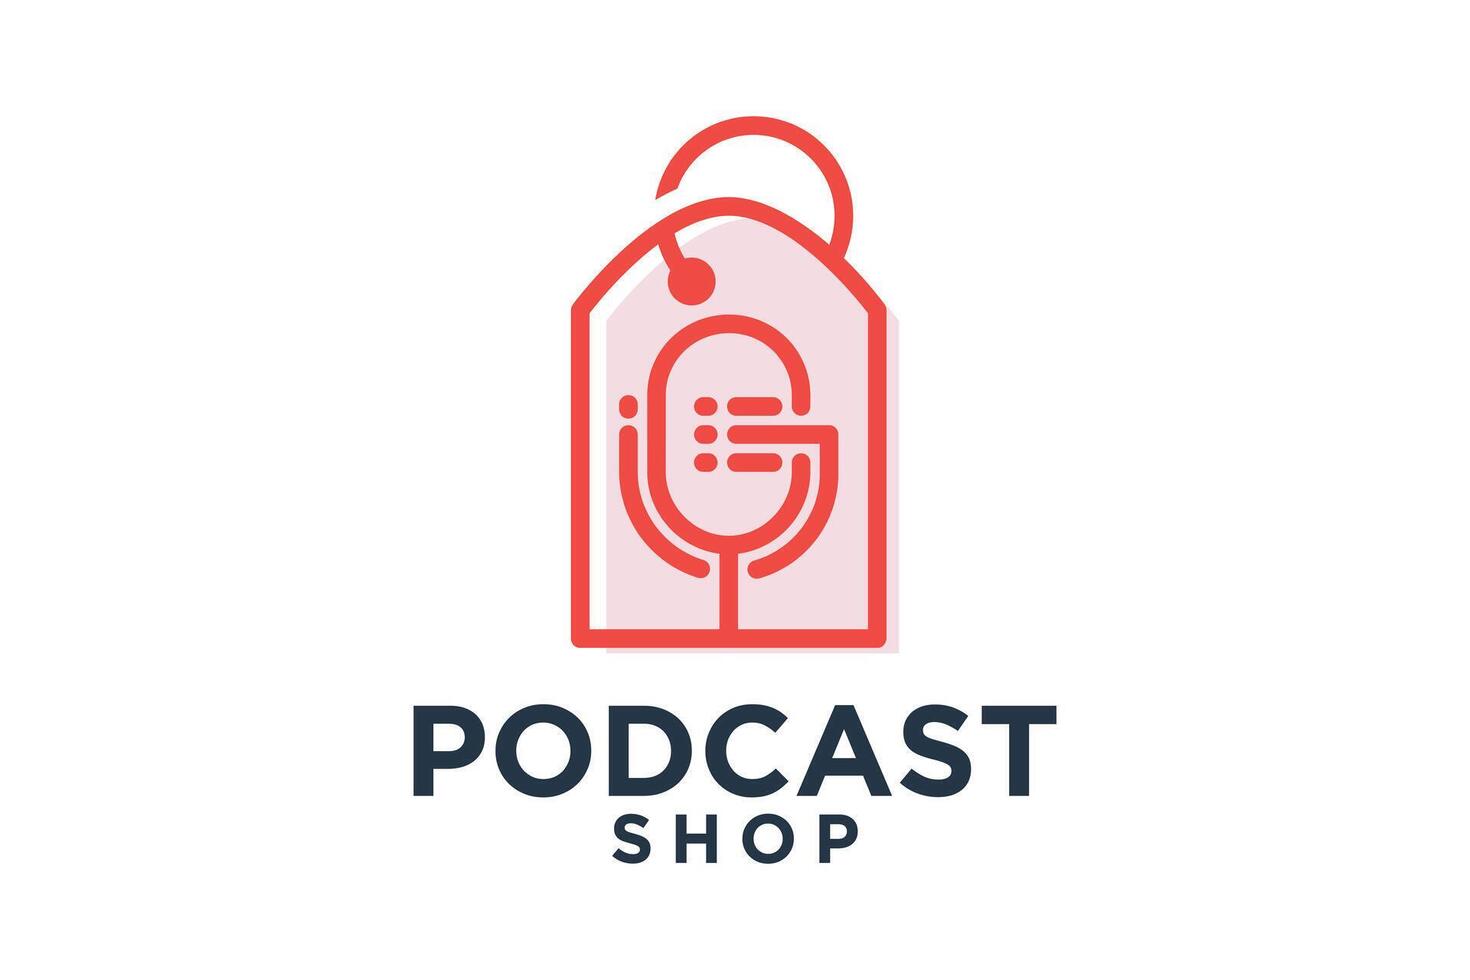 Podcast negozio logo design creativo concetto stile moderno vettore